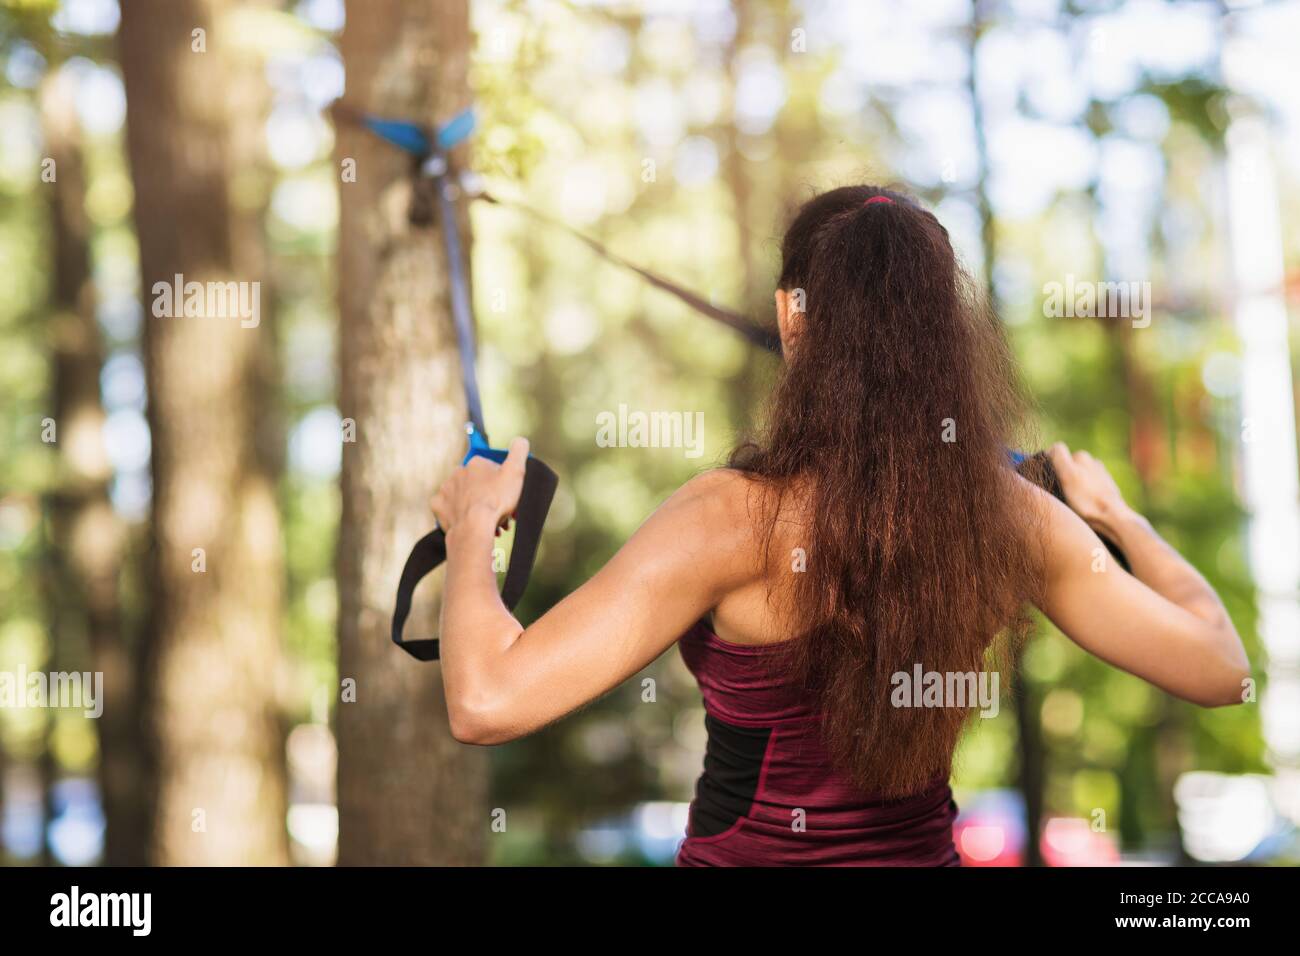 Junge Frau führt eine Übung, um die Muskeln des Rückens mit Fitness-Gurte an einem Baum im Park befestigt trainieren. Gesundes Lifestyle-Konzept Stockfoto